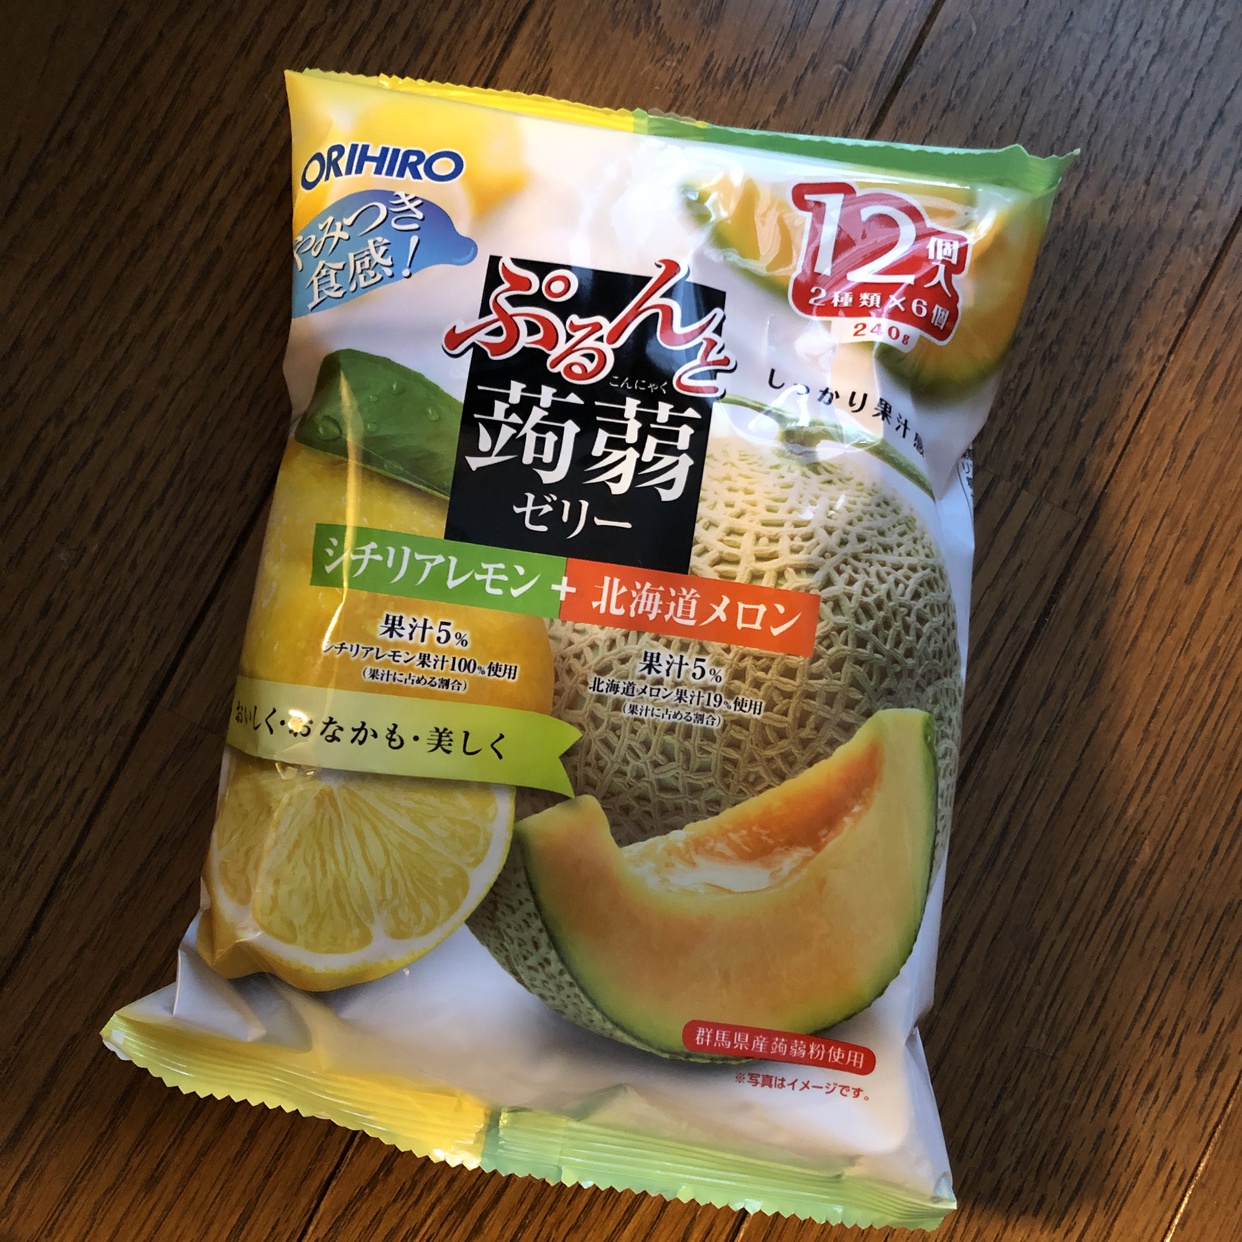 レモンもメロンもどちらも美味しい♪』by happy☆friday : ORIHIRO(オリヒロ) ぷるんと蒟蒻ゼリーパウチの口コミ | モノシル